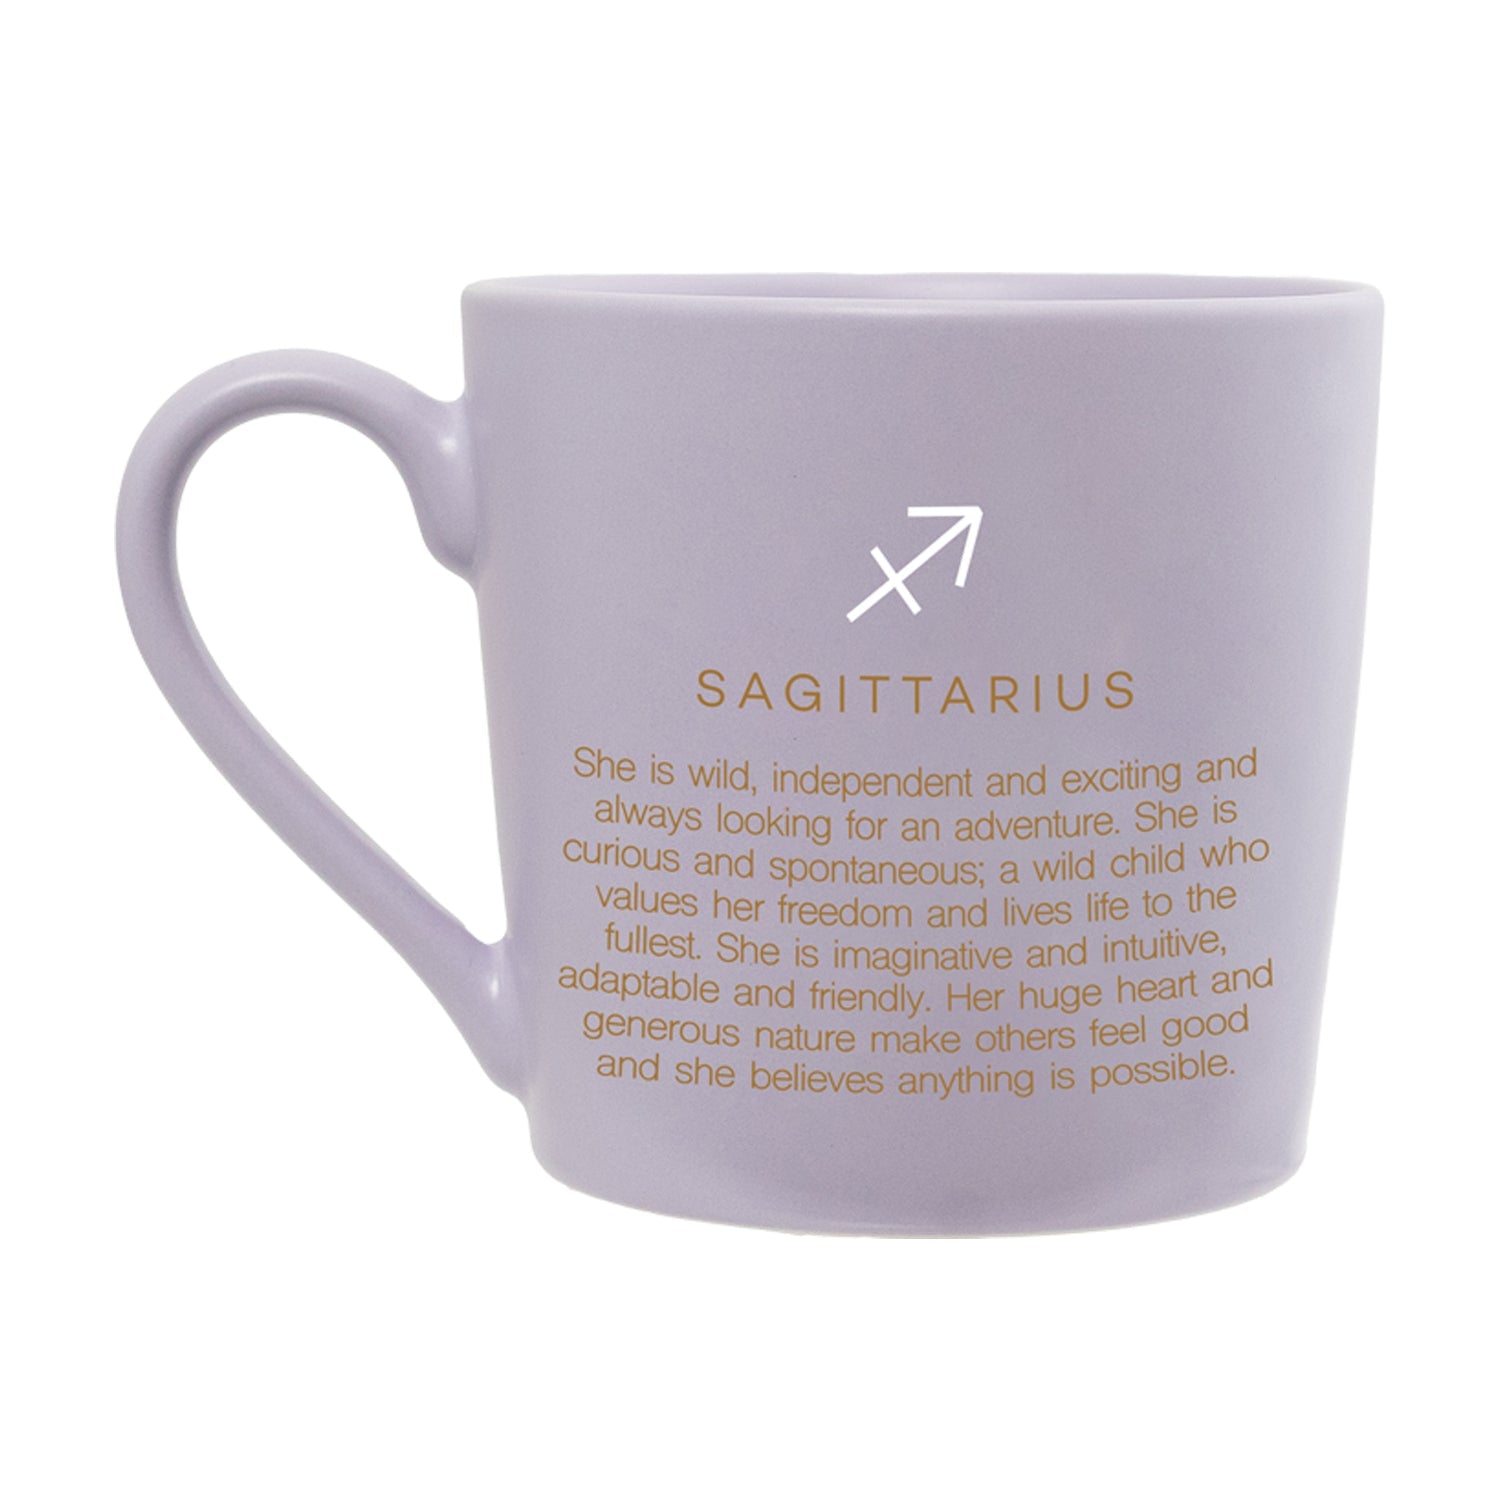 Splosh - Mystique Mug - Sagittarius